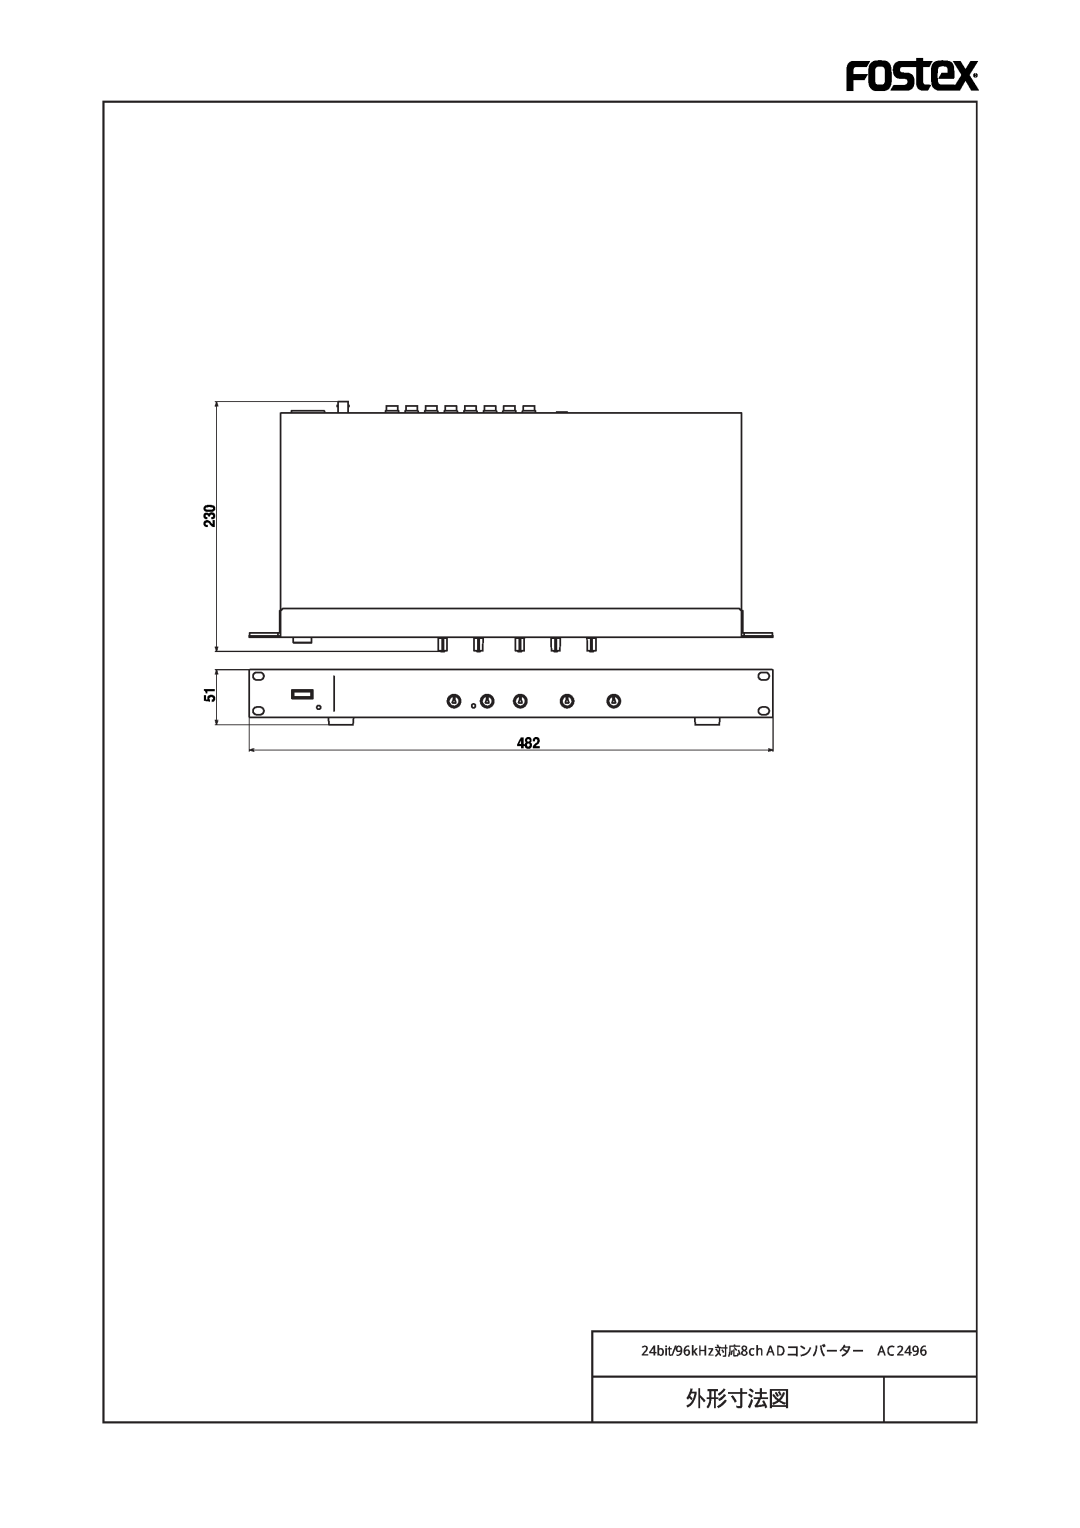 Fostex manual 外形寸法図, 24bit/96kHz対応8ch ADコンバーター AC2496 